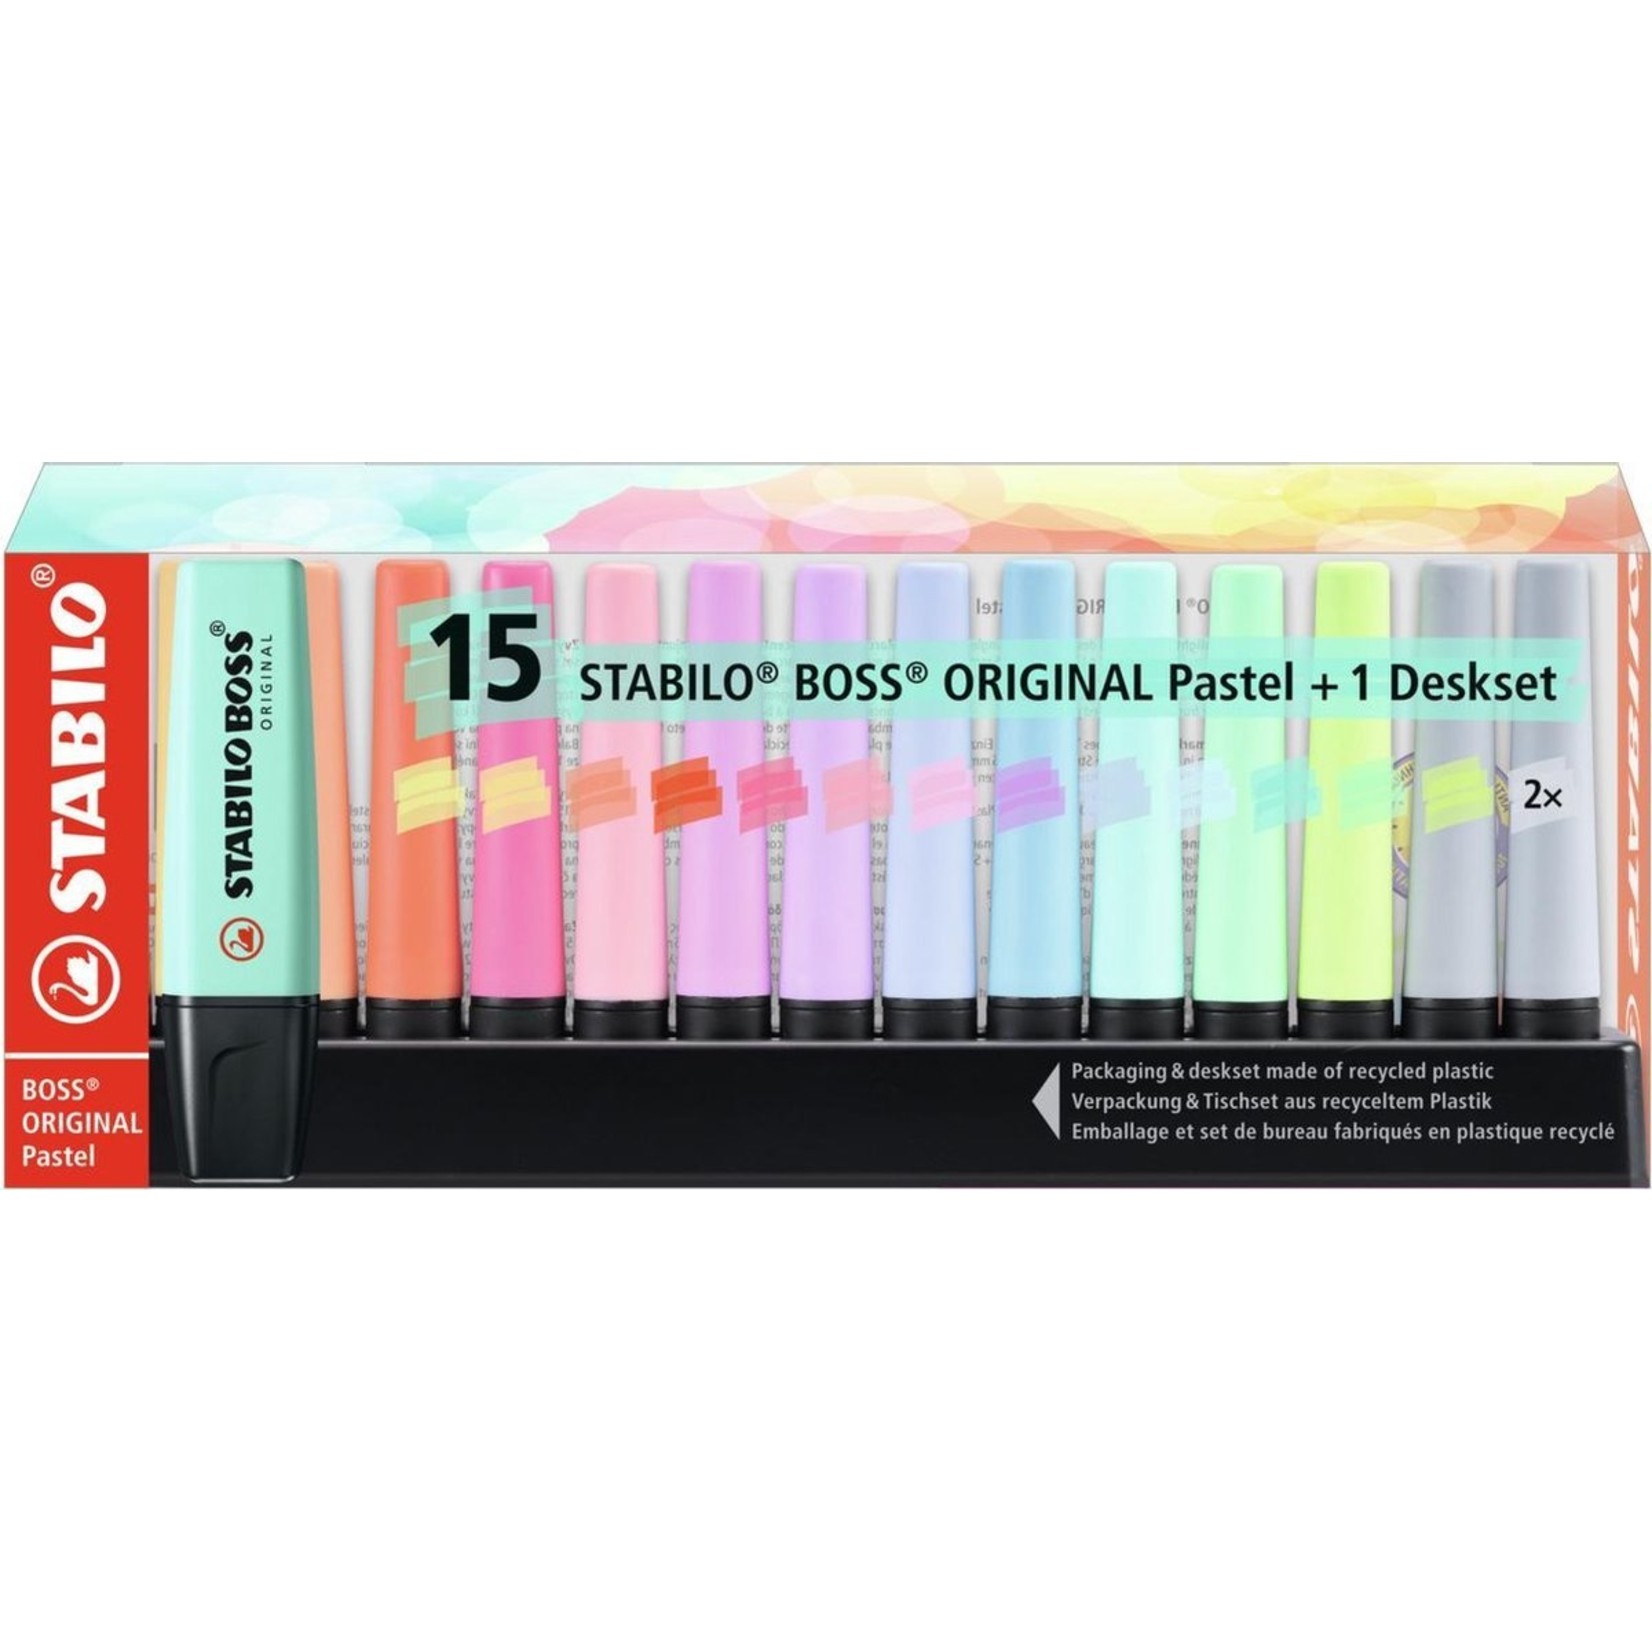 Stabilo BOSS ORIGINAL Pastel - Markeerstift - 15 Stuks Deskset - Met 14 Verschillende Kleuren